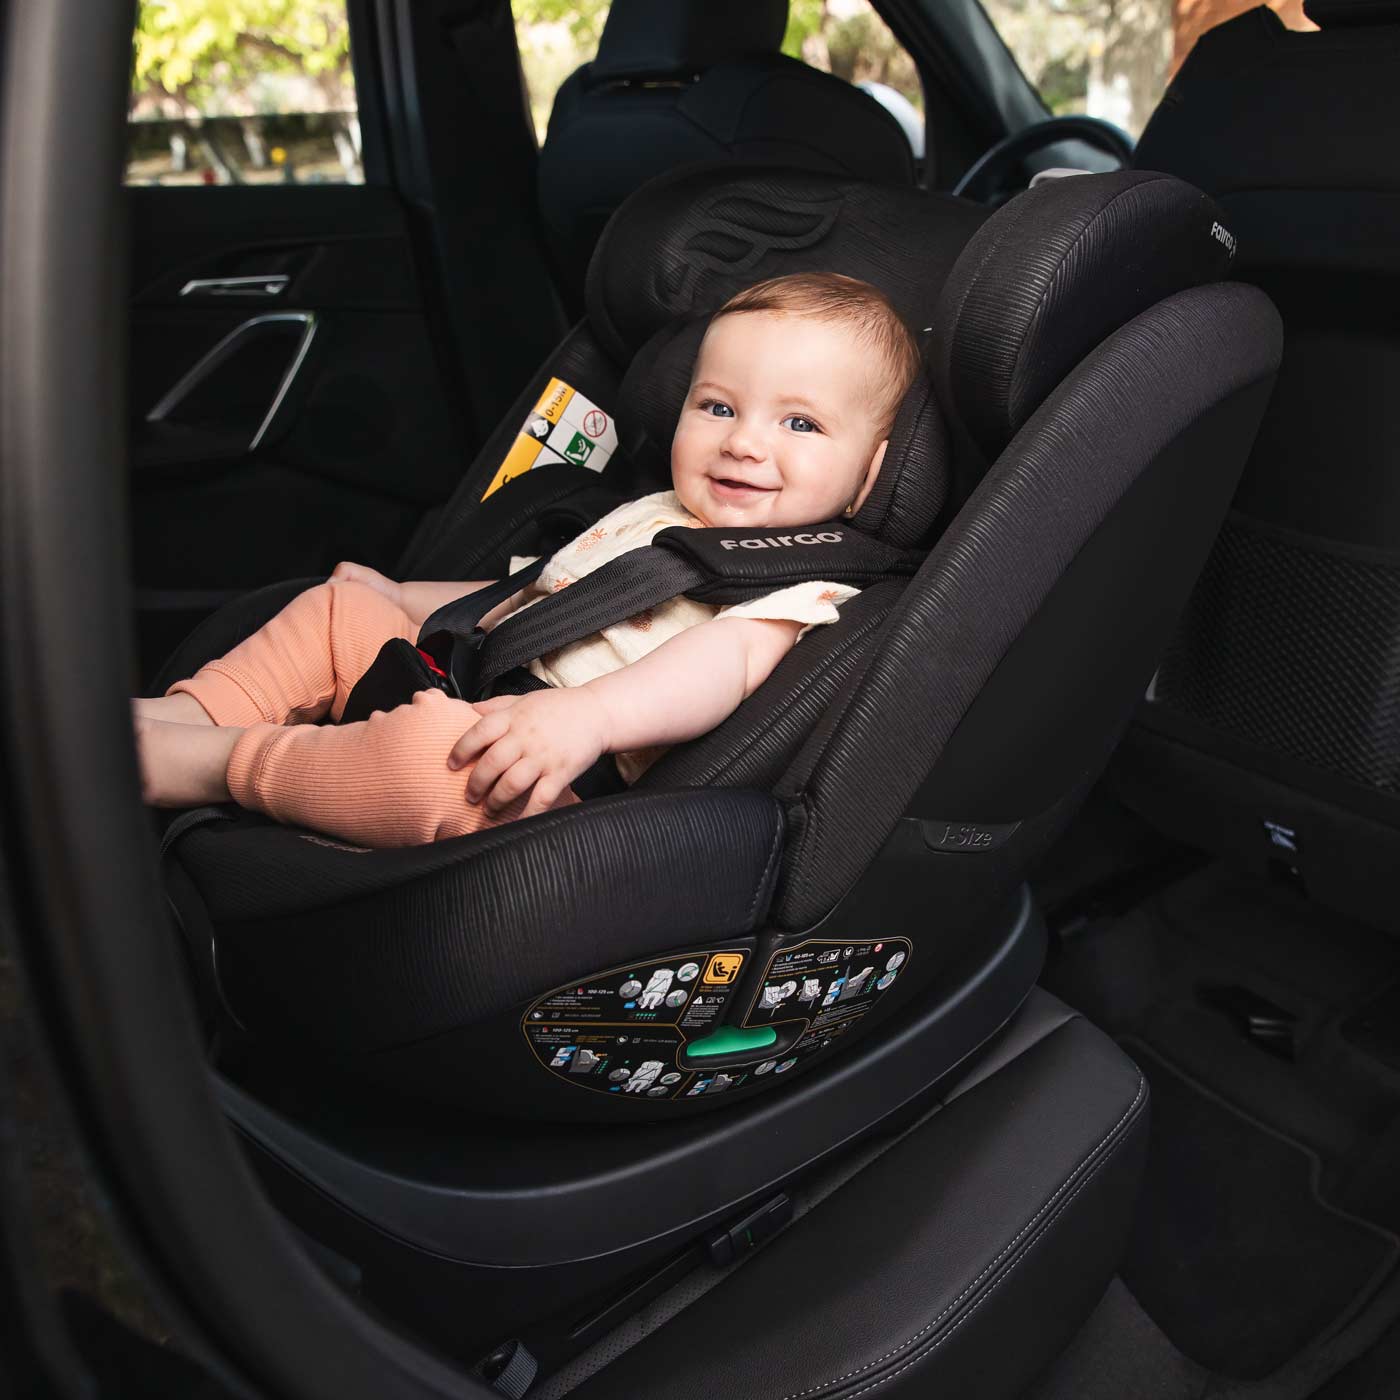 Bebé en silla de coche Fairgo Babyauto viajando con la silla en sentido contrario a la marcha